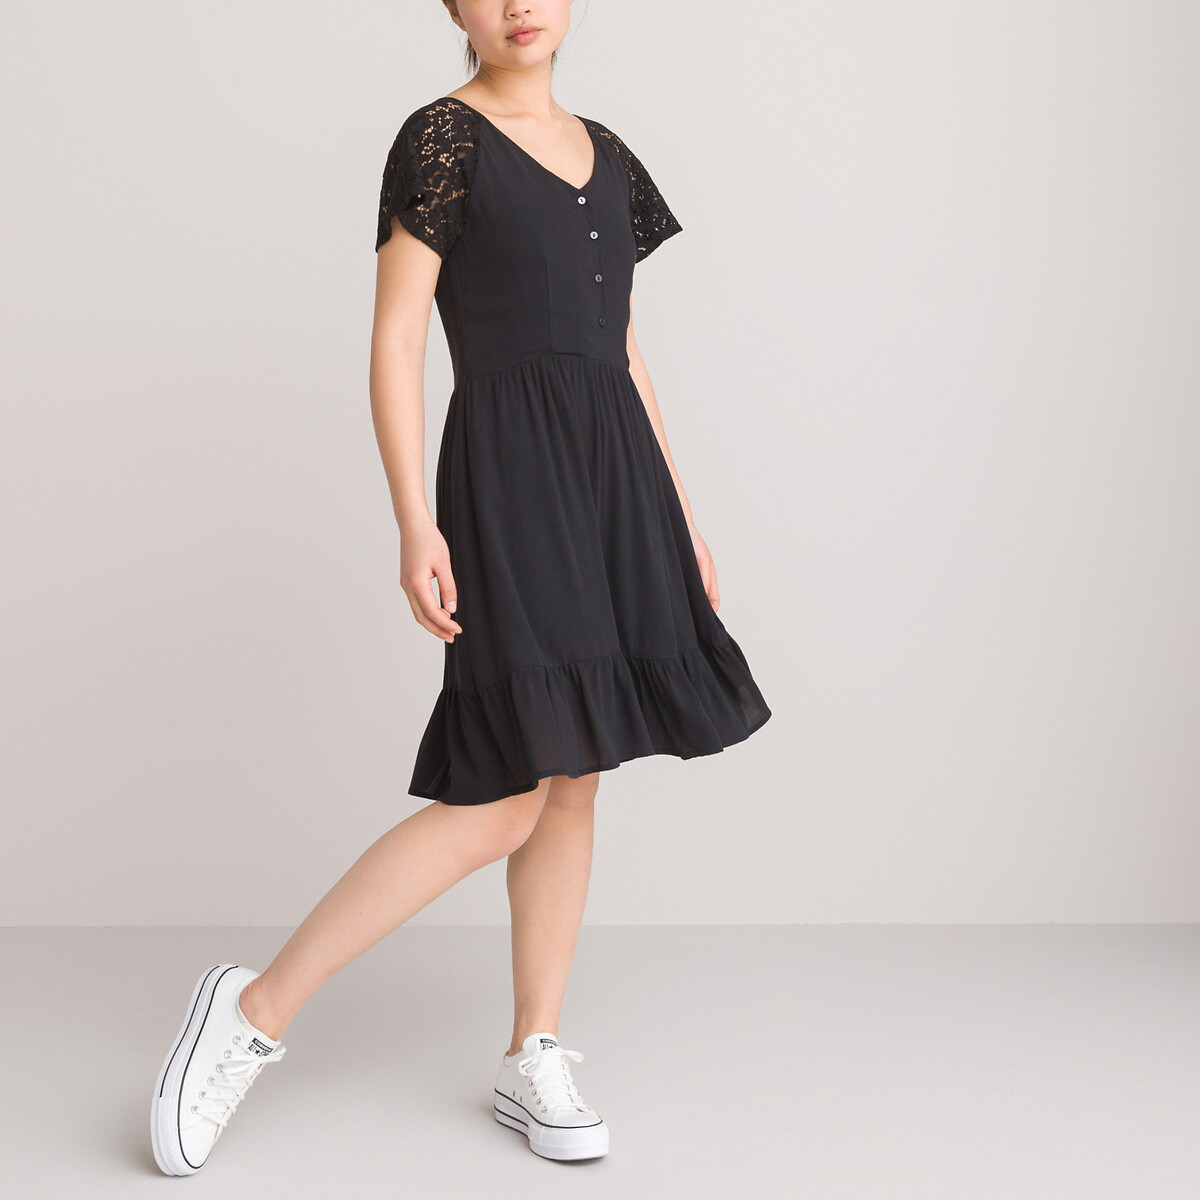 Черное Кружевное платье с короткими рукавами 1018 лет 10 лет - 138 см черный